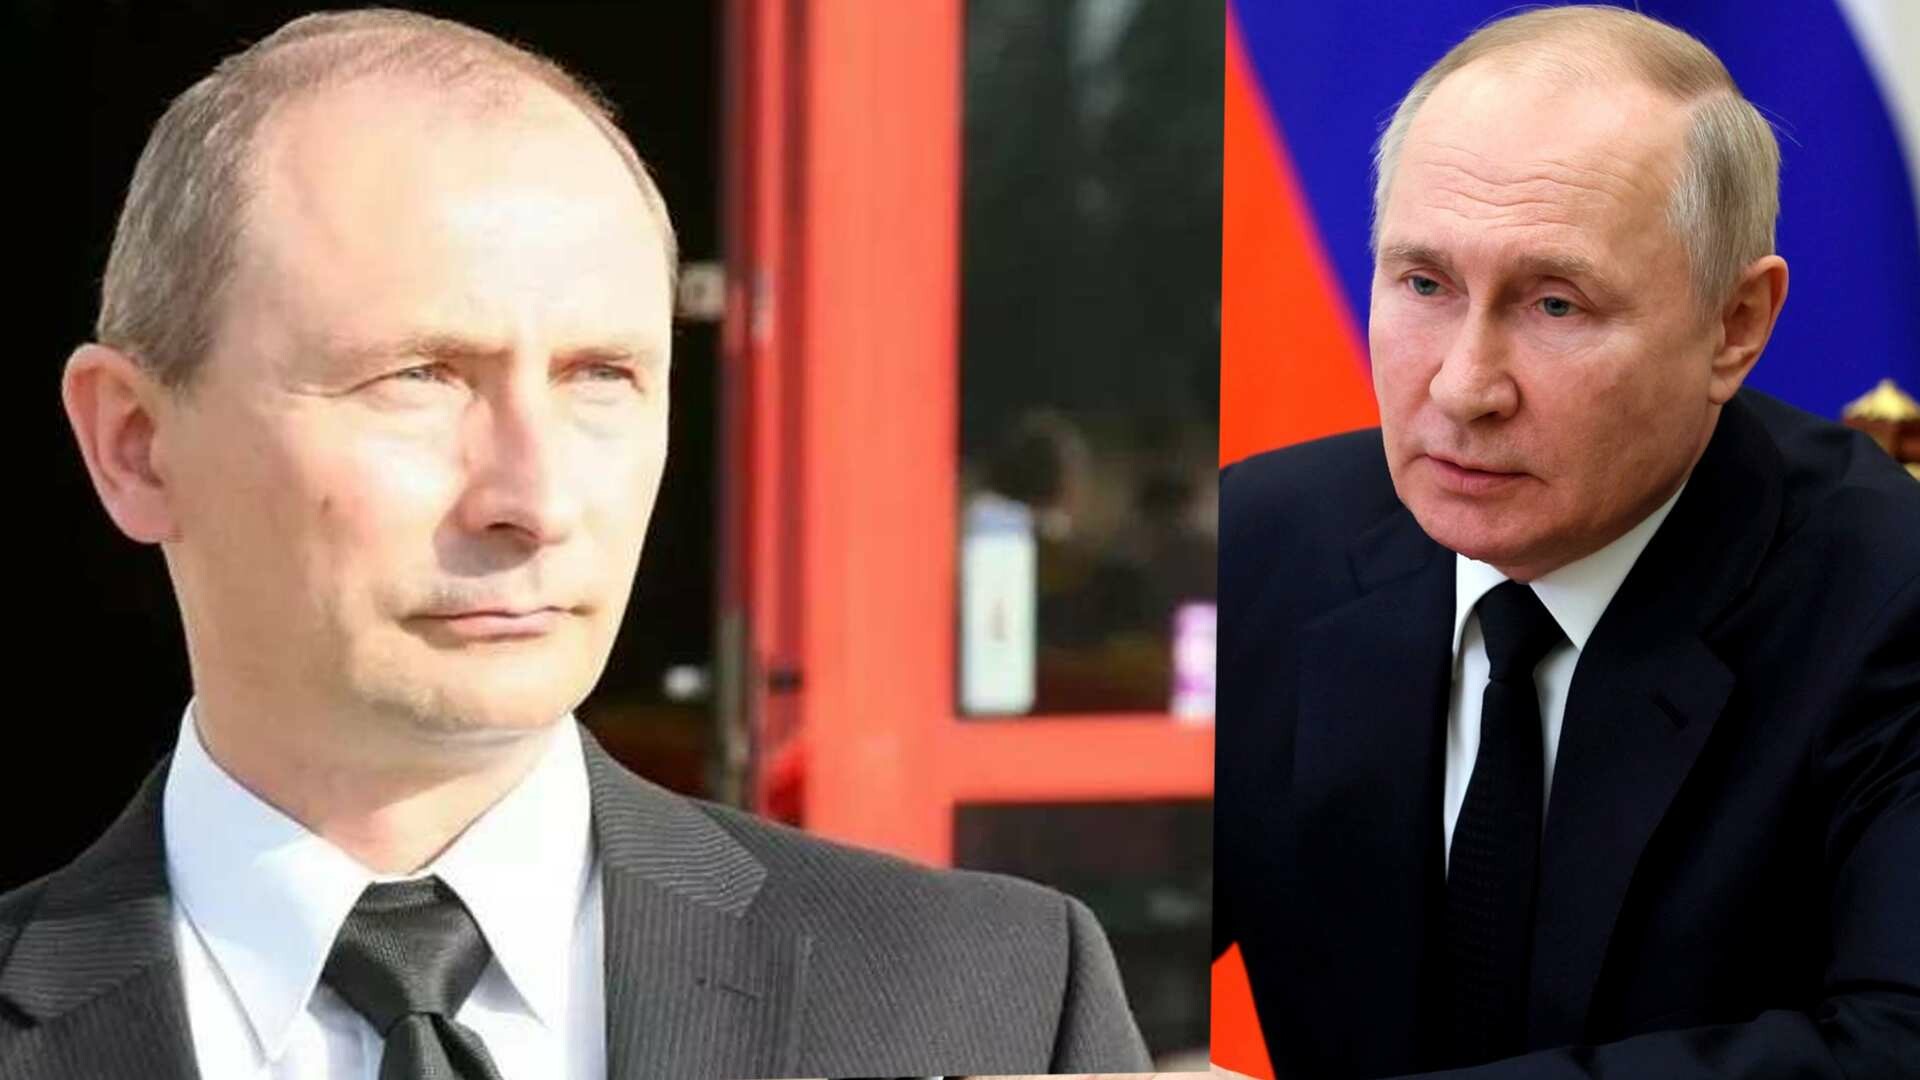 Adevărata „sosie” a lui Vladimir Putin se teme pentru viața sa, dar nu își lasă barbă. Slawomir: „este foarte periculos”